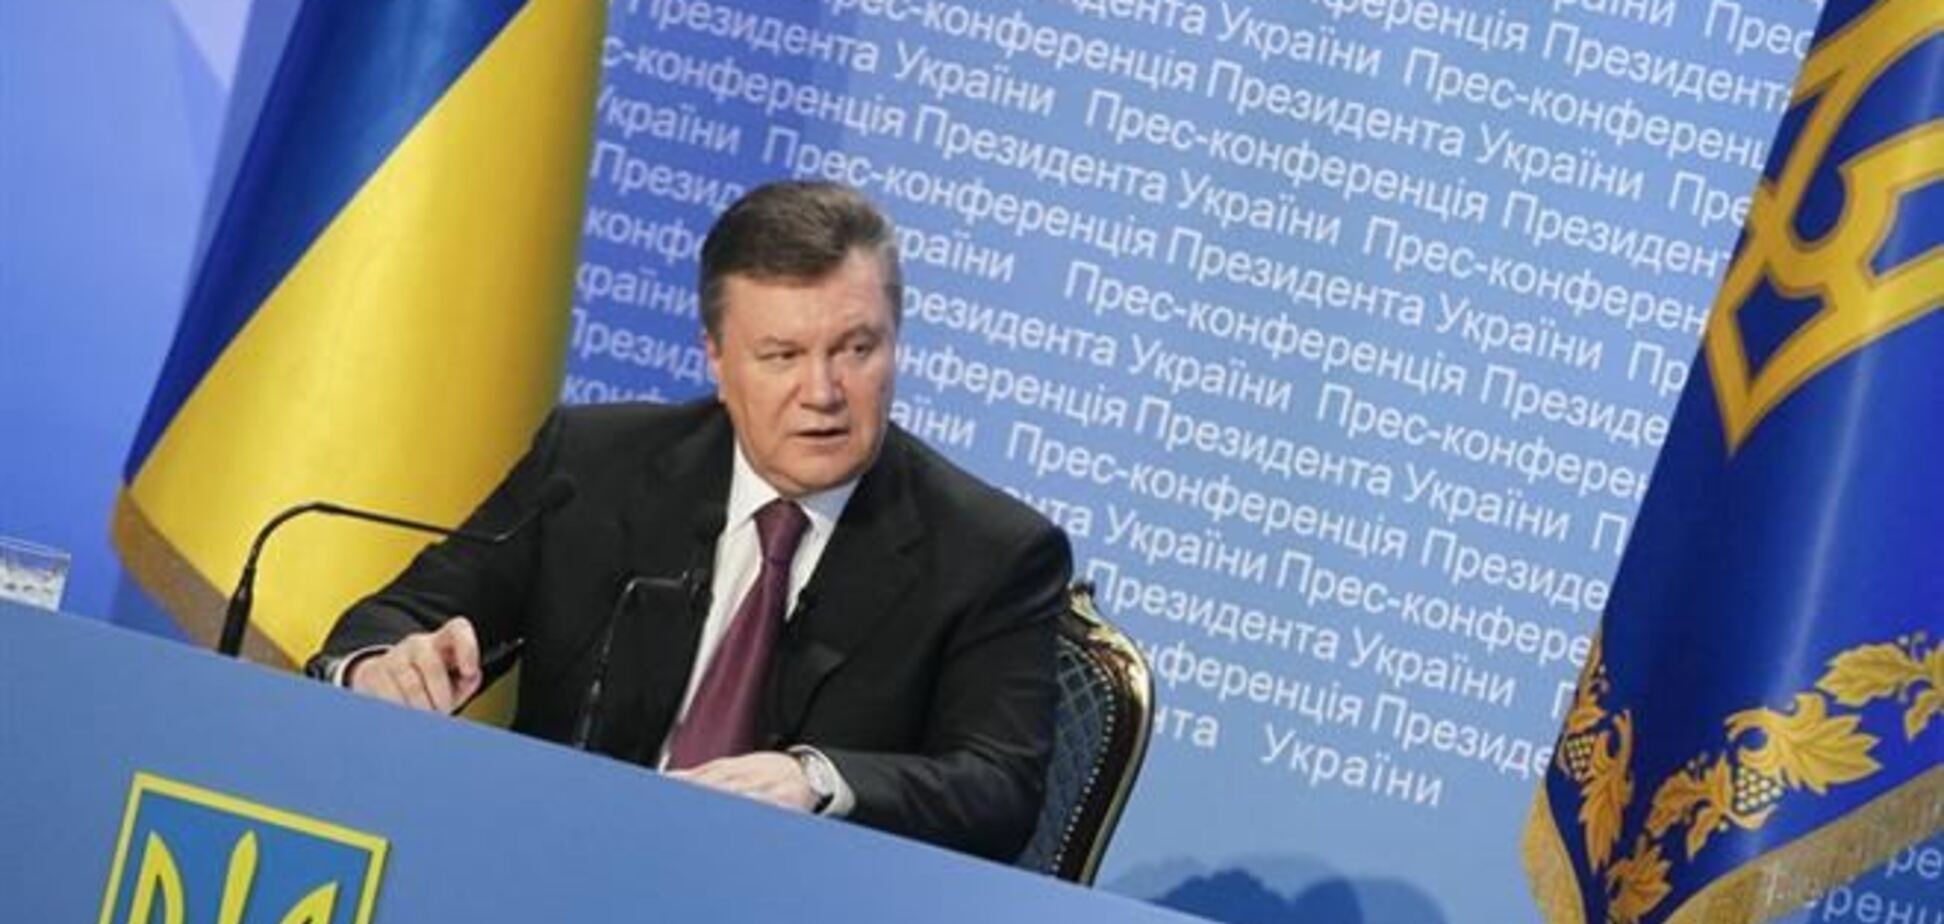 Янукович в обращении указал на опасность для всей Украины